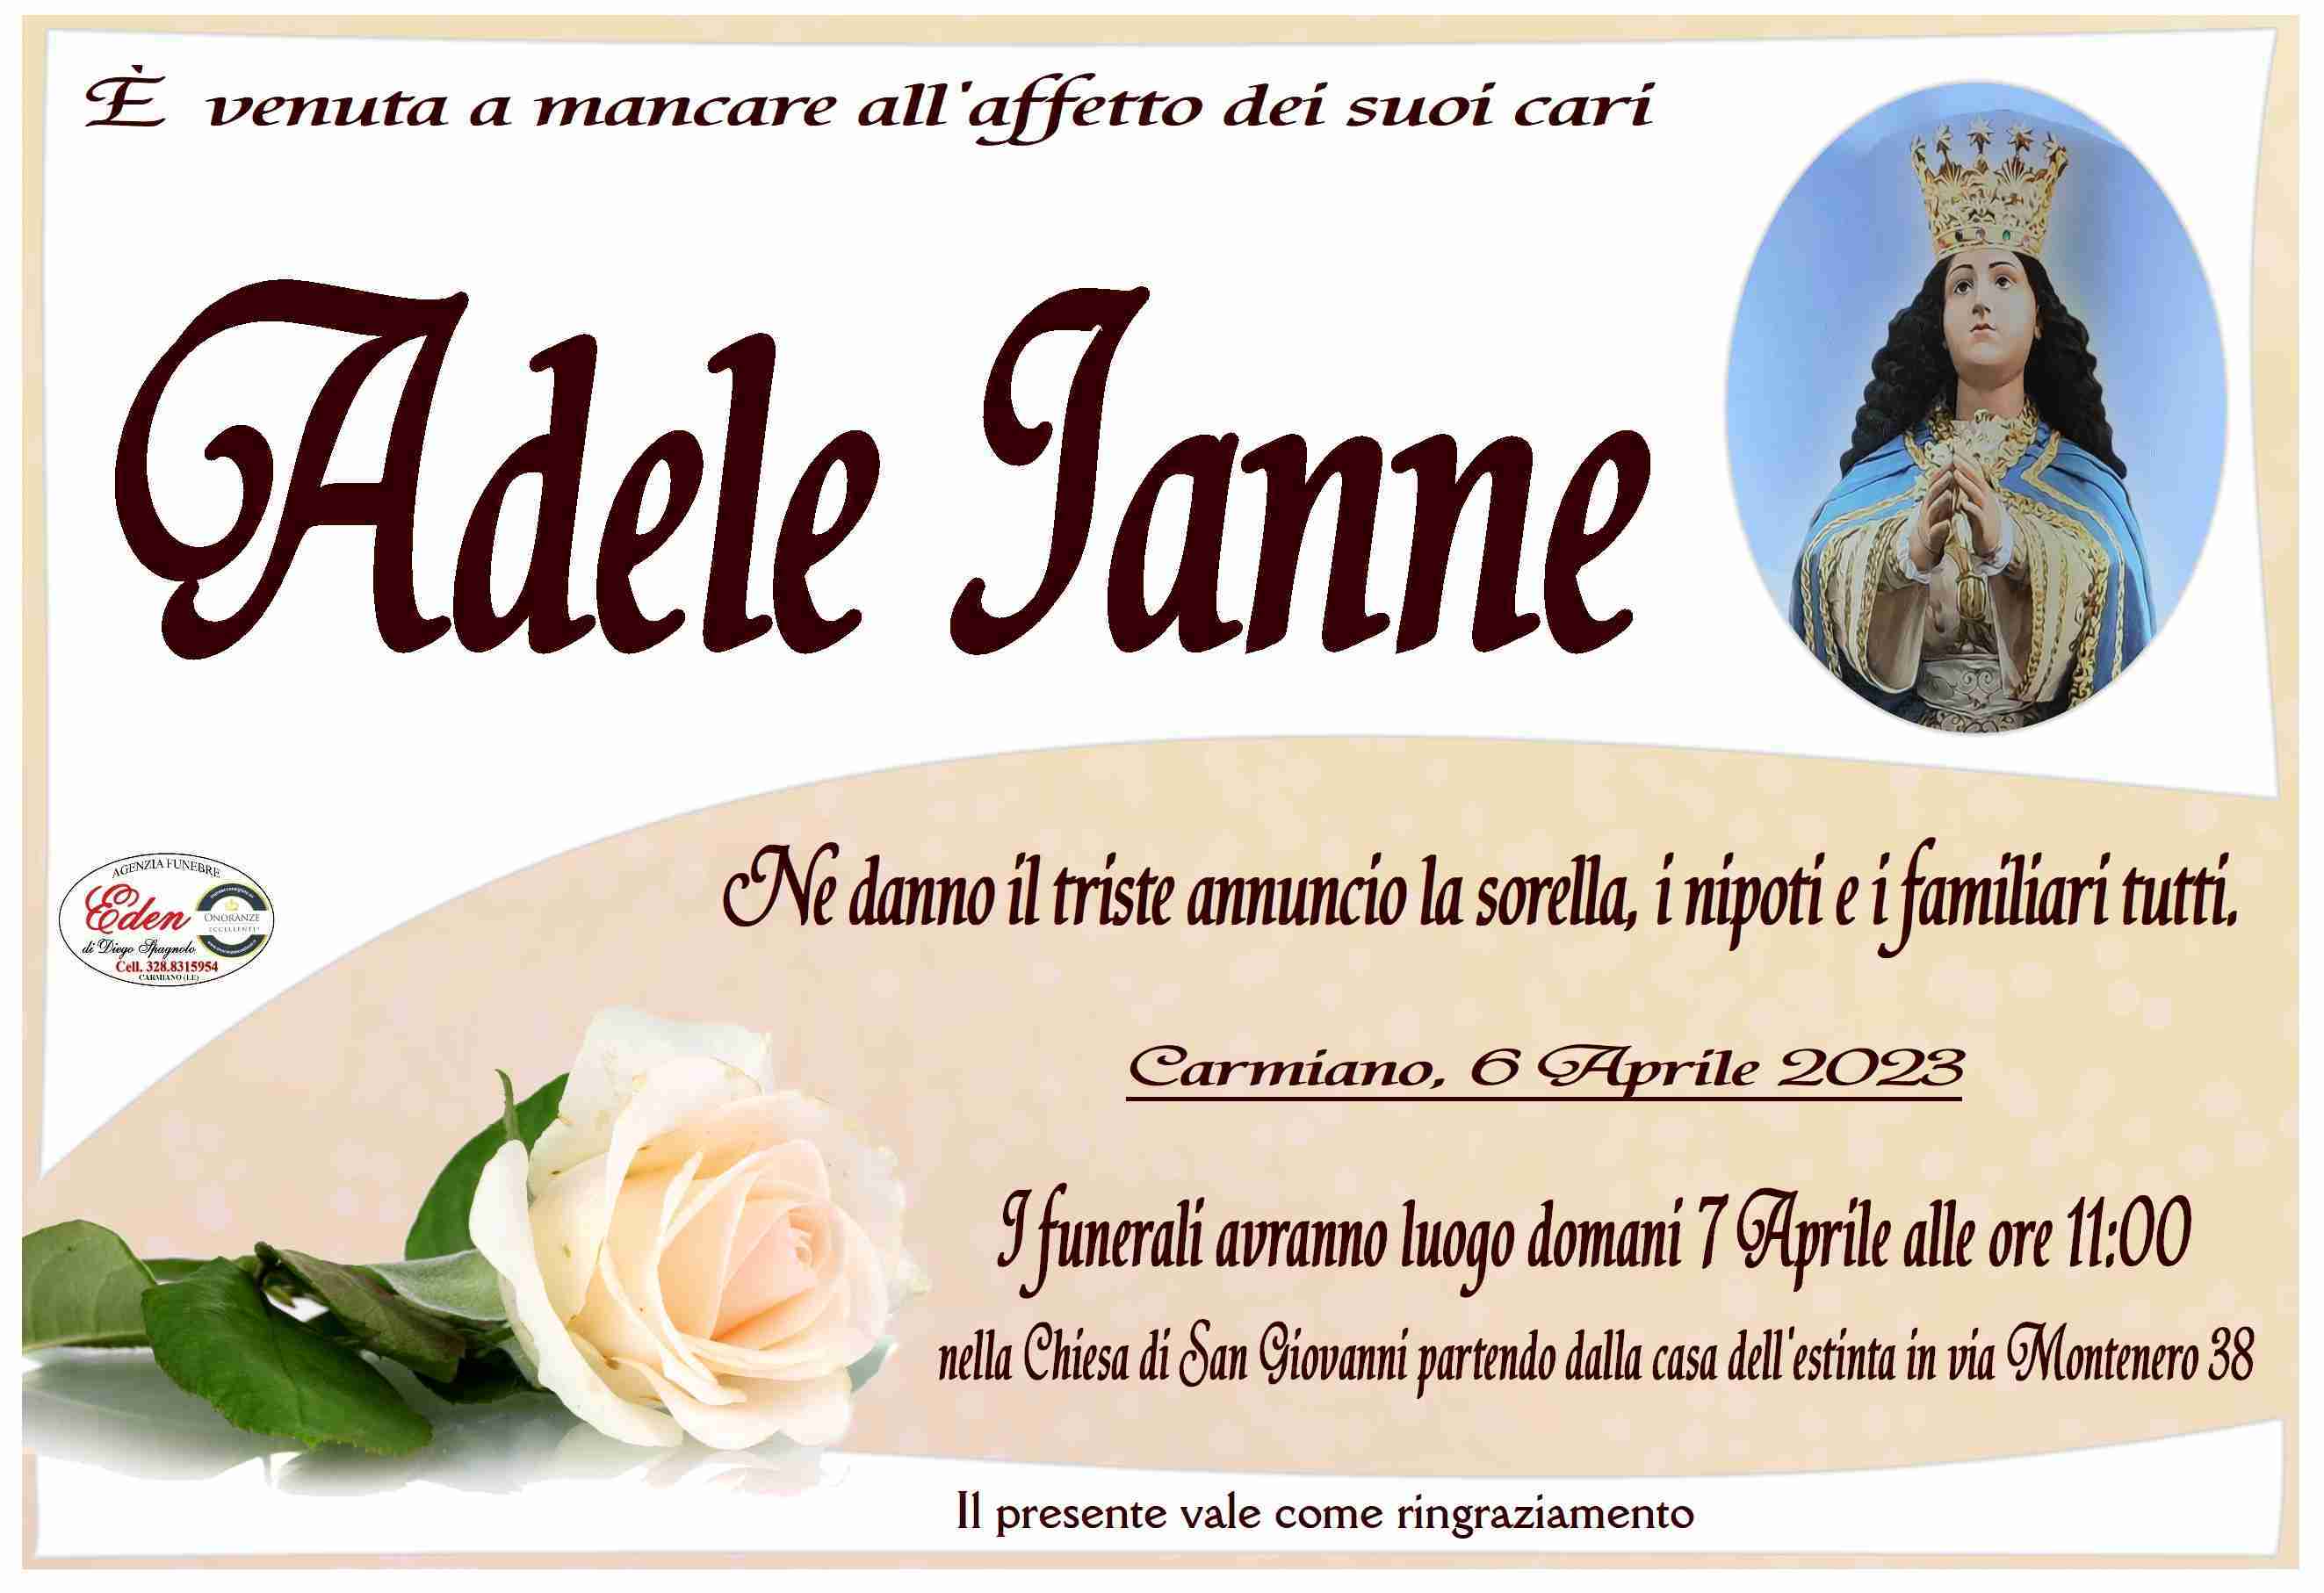 Adele Ianne